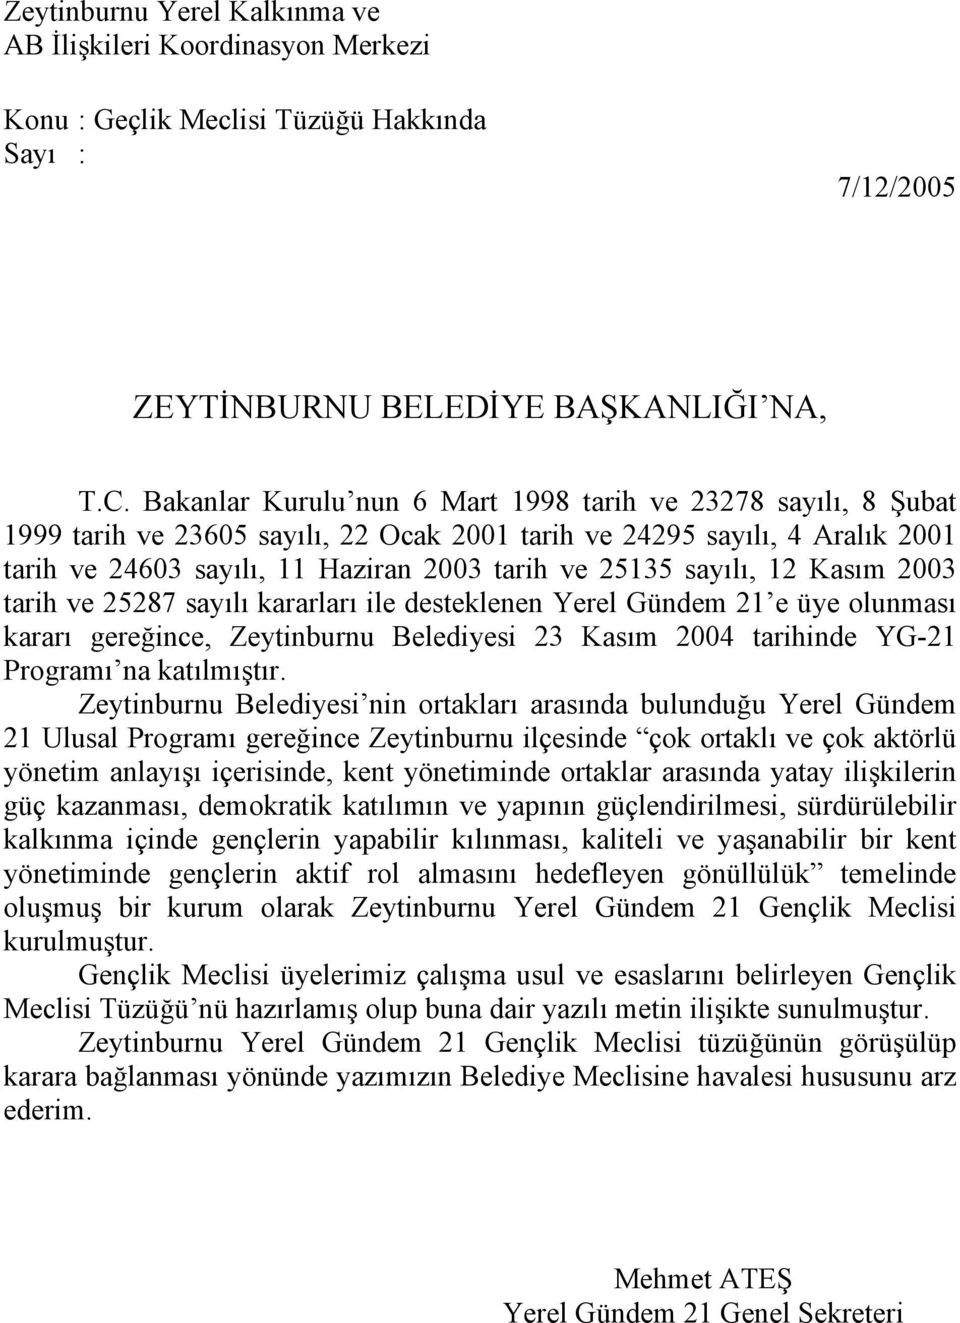 sayılı, 12 Kasım 2003 tarih ve 25287 sayılı kararları ile desteklenen Yerel Gündem 21 e üye olunması kararı gereğince, Zeytinburnu Belediyesi 23 Kasım 2004 tarihinde YG-21 Programı na katılmıştır.